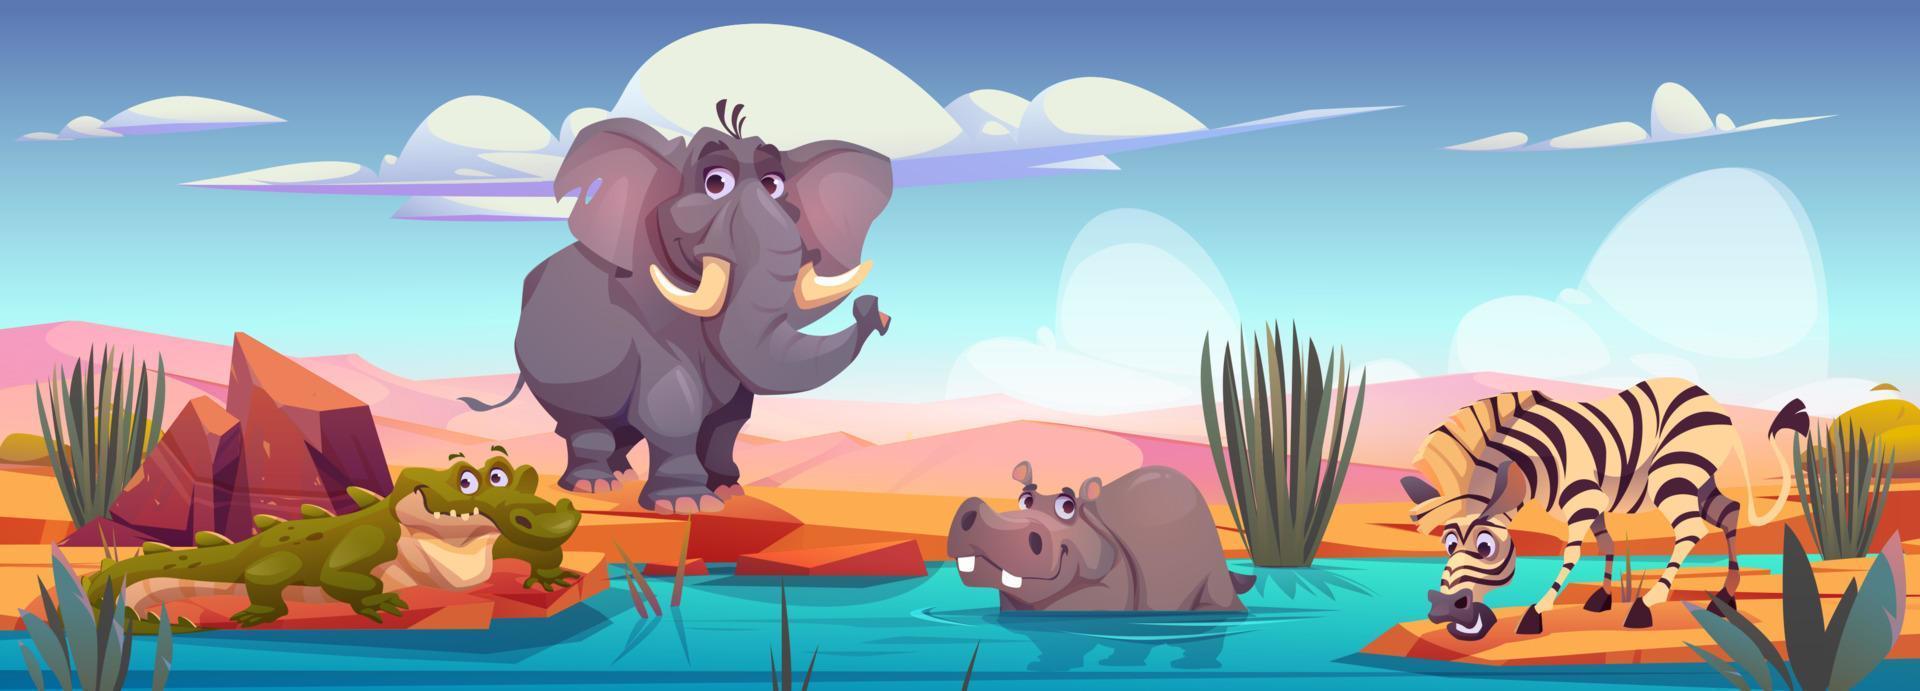 elefante, cebra, cocodrilo, hipopótamo en la orilla del río vector